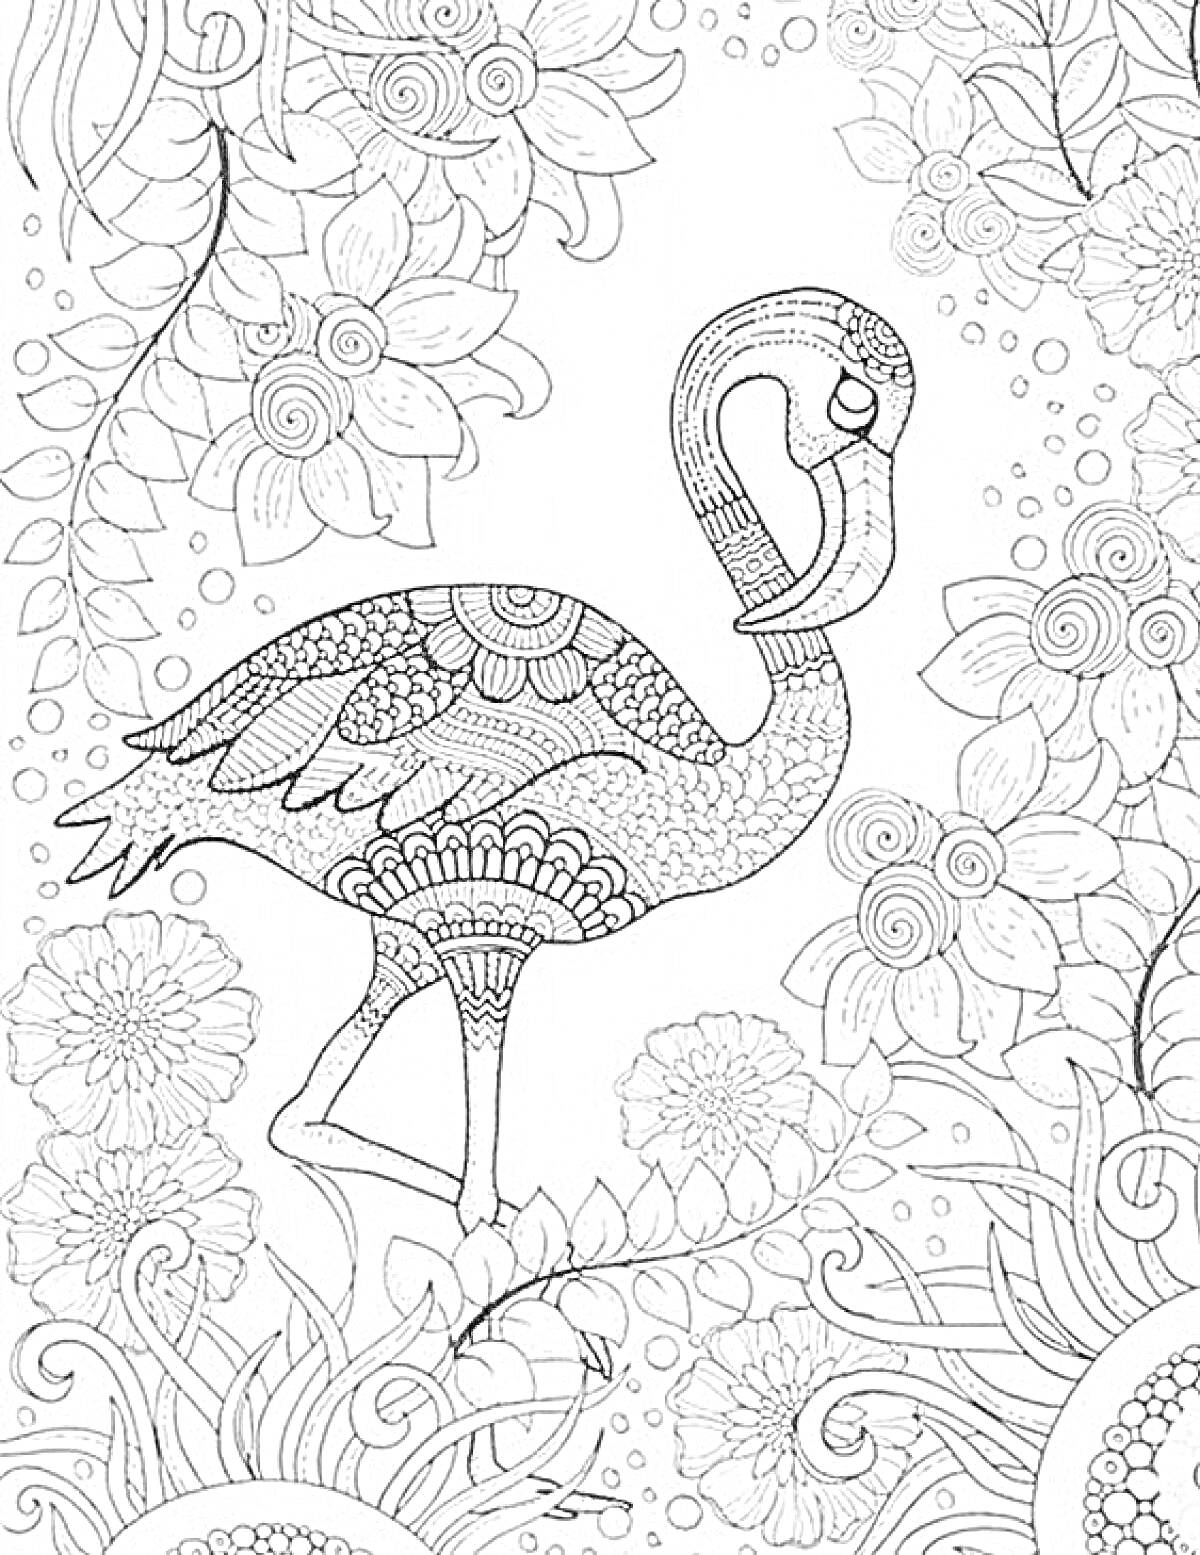 Раскраска Антистресс раскраска с фламинго, цветами и декоративными элементами